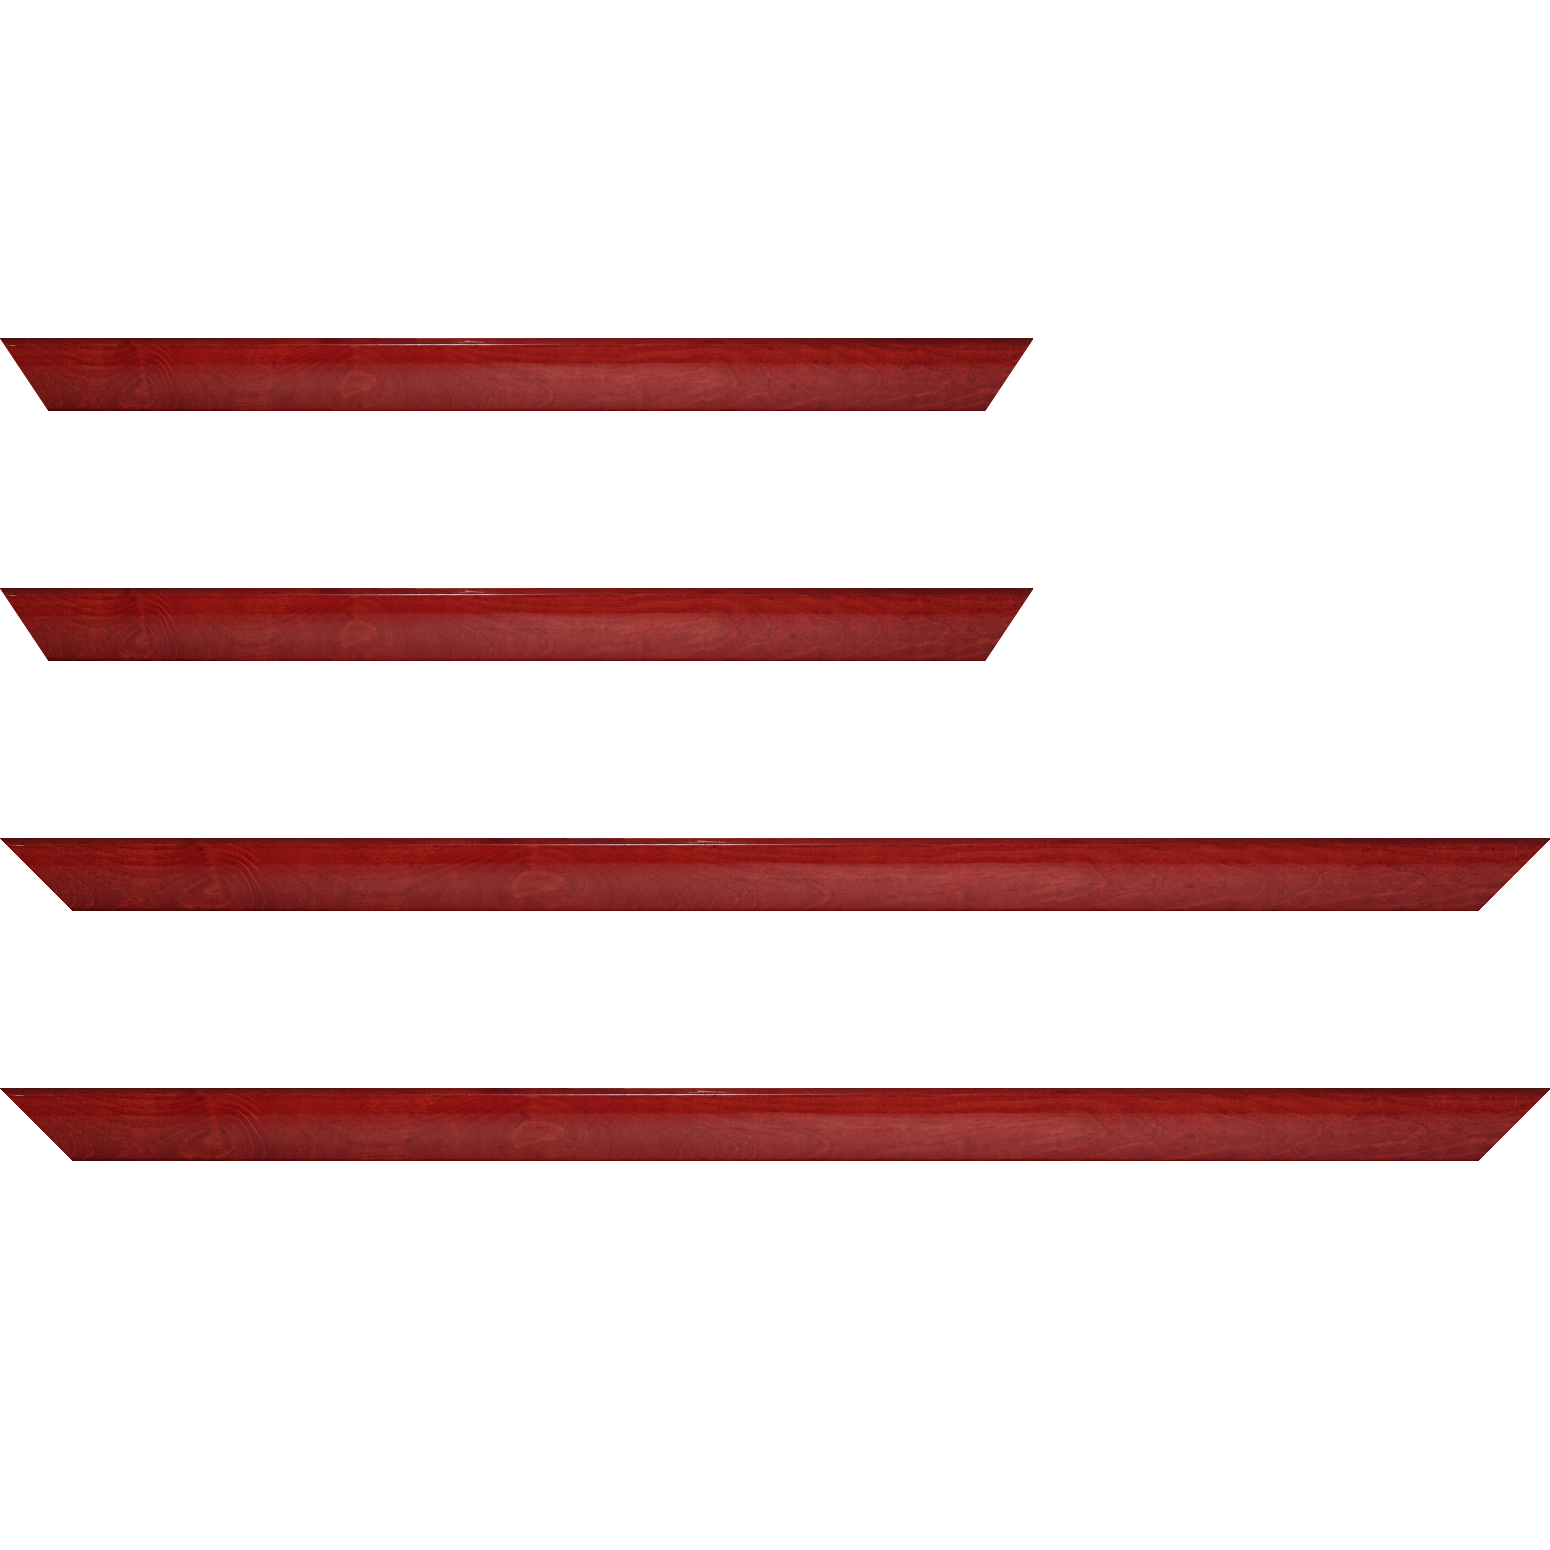 Baguette bois profil arrondi en pente plongeant largeur 2.4cm couleur rouge cerise finition vernis brillant,veine du bois  apparent (pin) , - 50x60